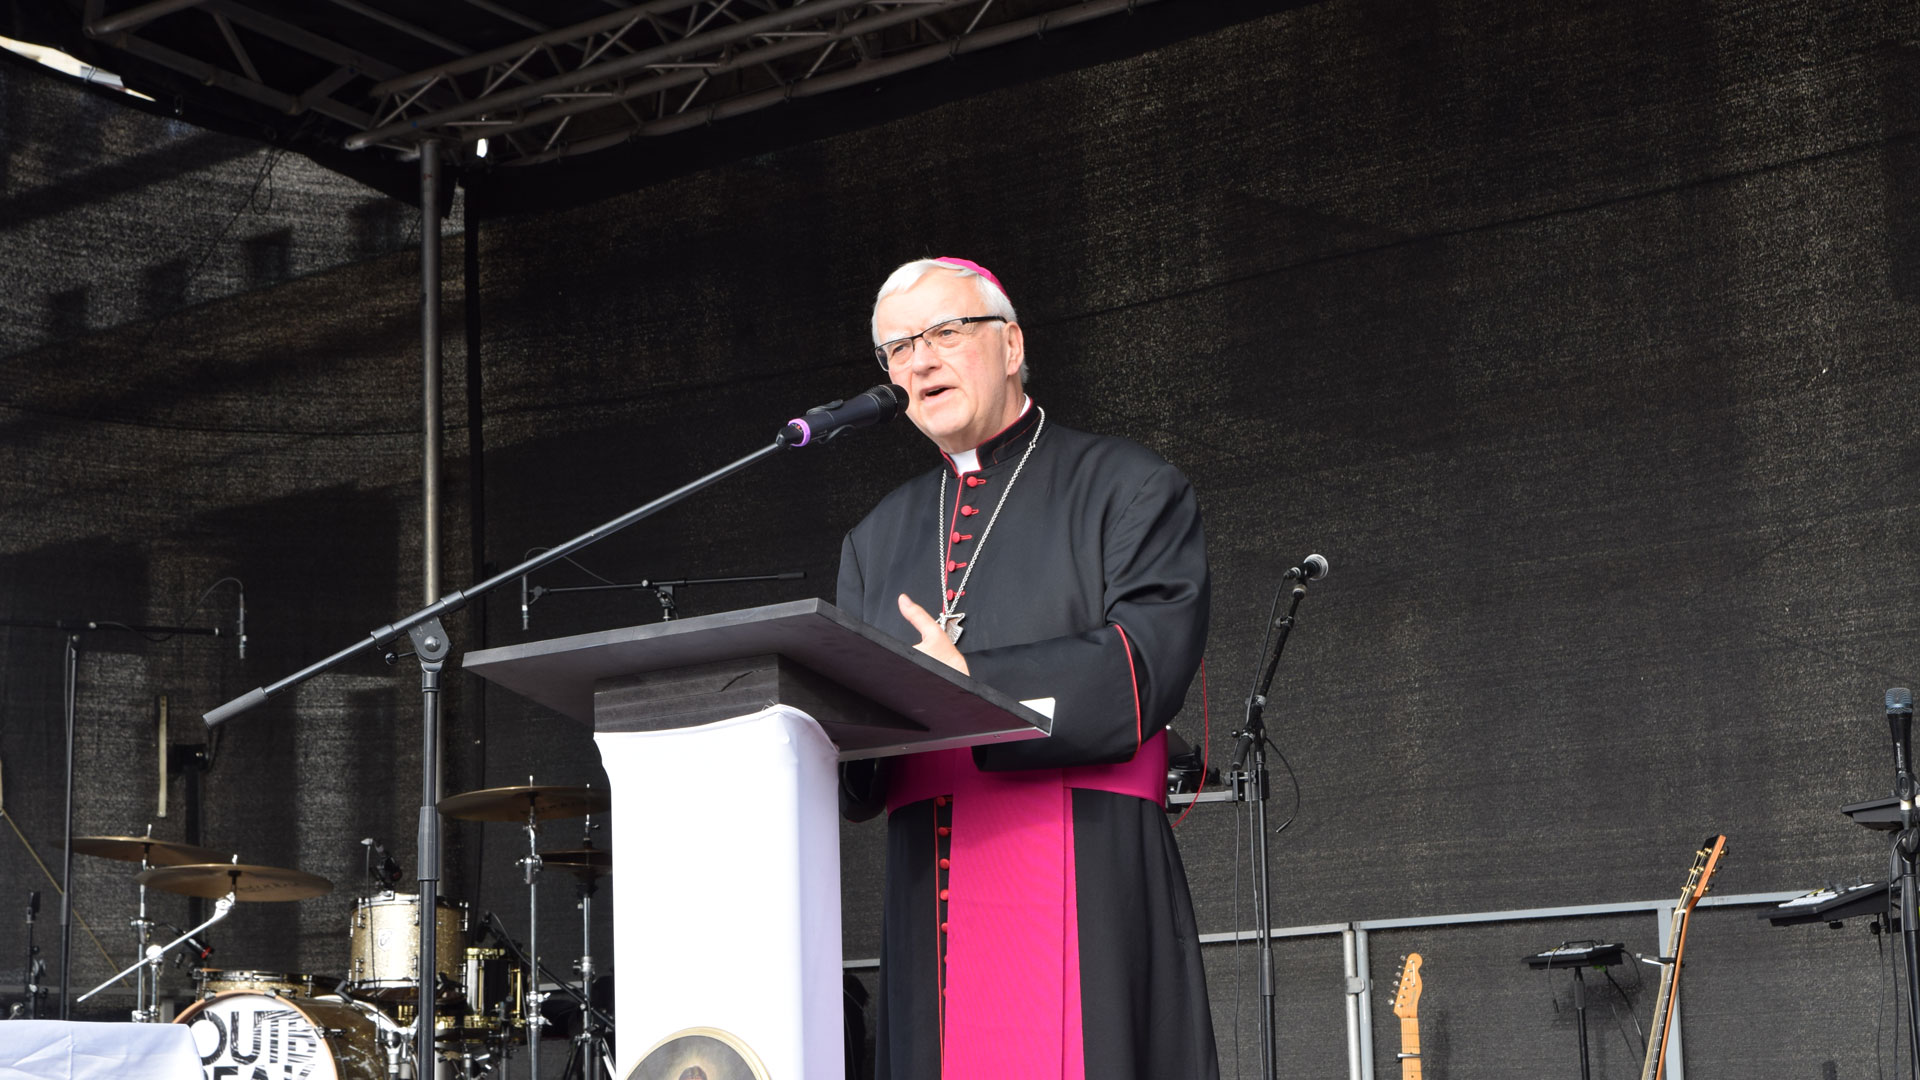 Der Berliner Erzbischof Heiner Koch betonte in seiner Predigt die Gnade Gottes den Menschen gegenüber